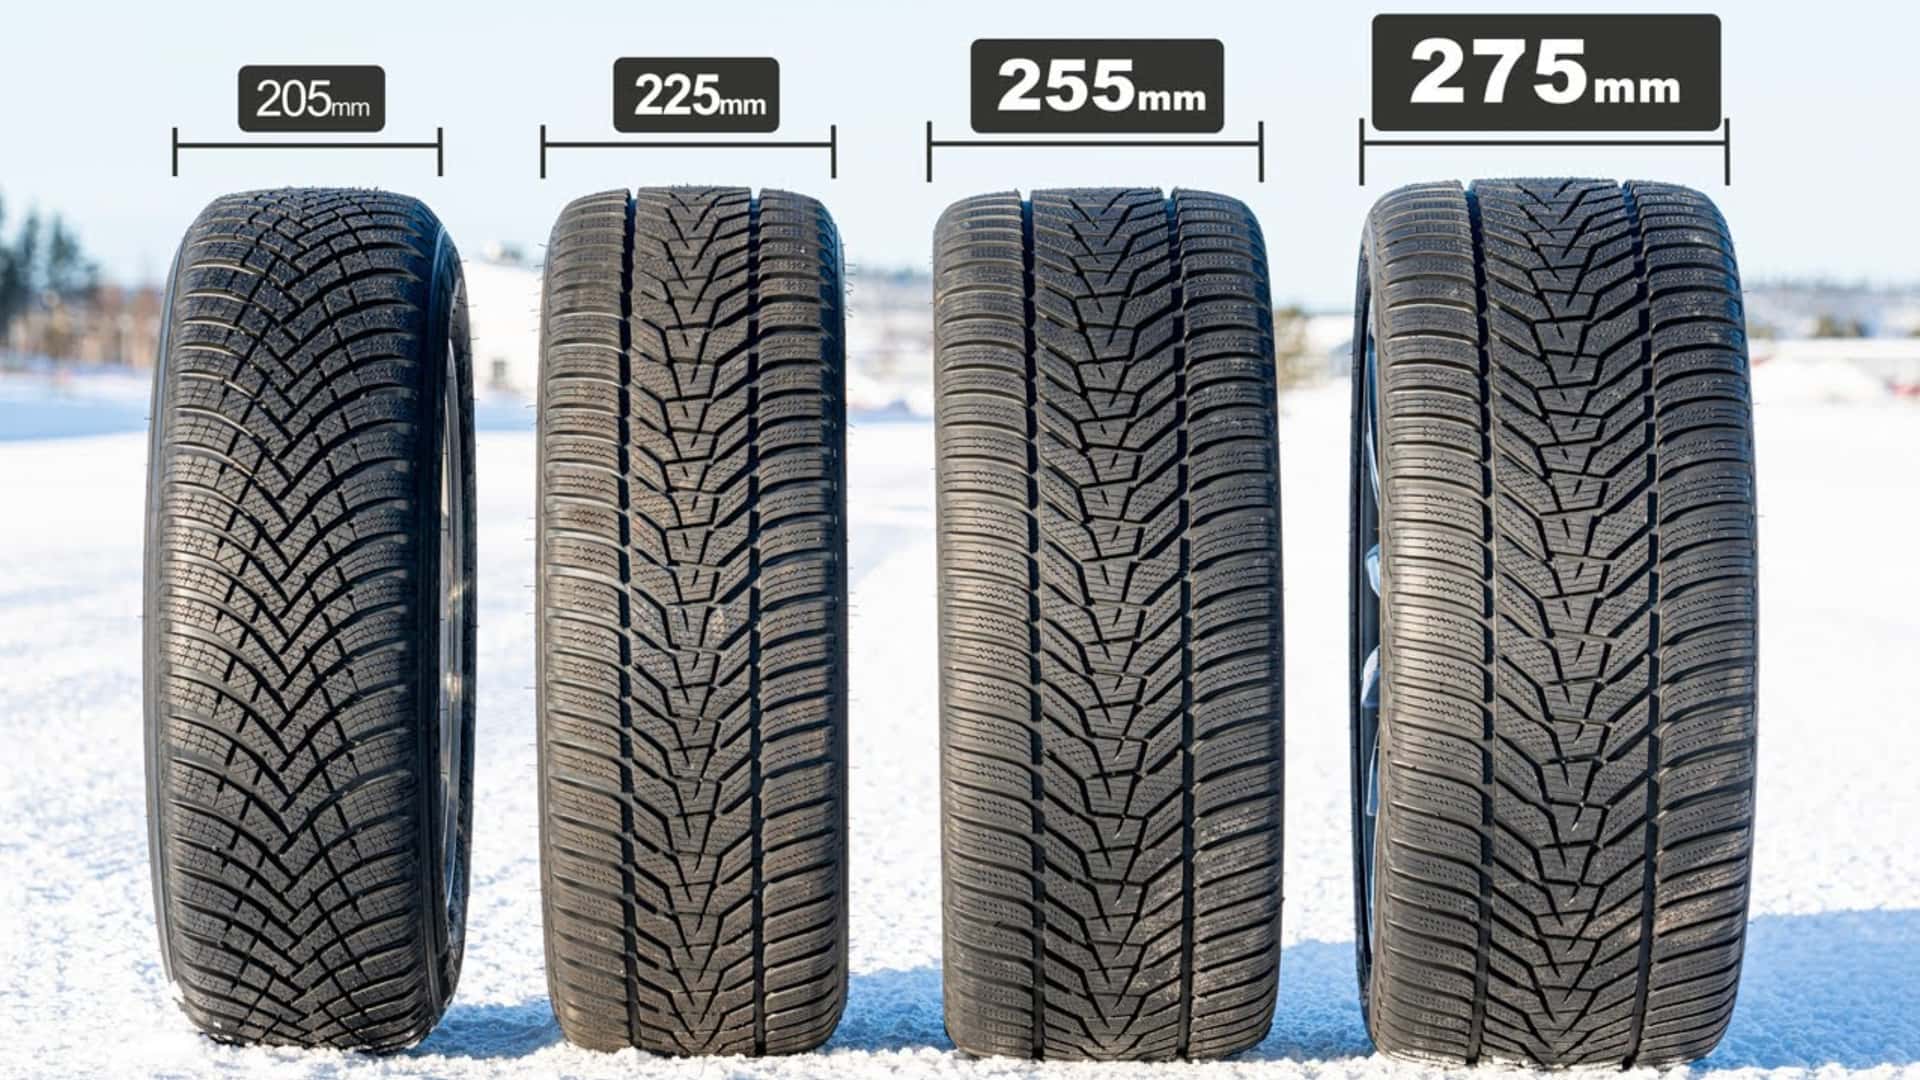 넓은 겨울용 타이어와 좁은 겨울용 타이어: 무엇을 선택하는지는 실제로 중요하지 않습니다.